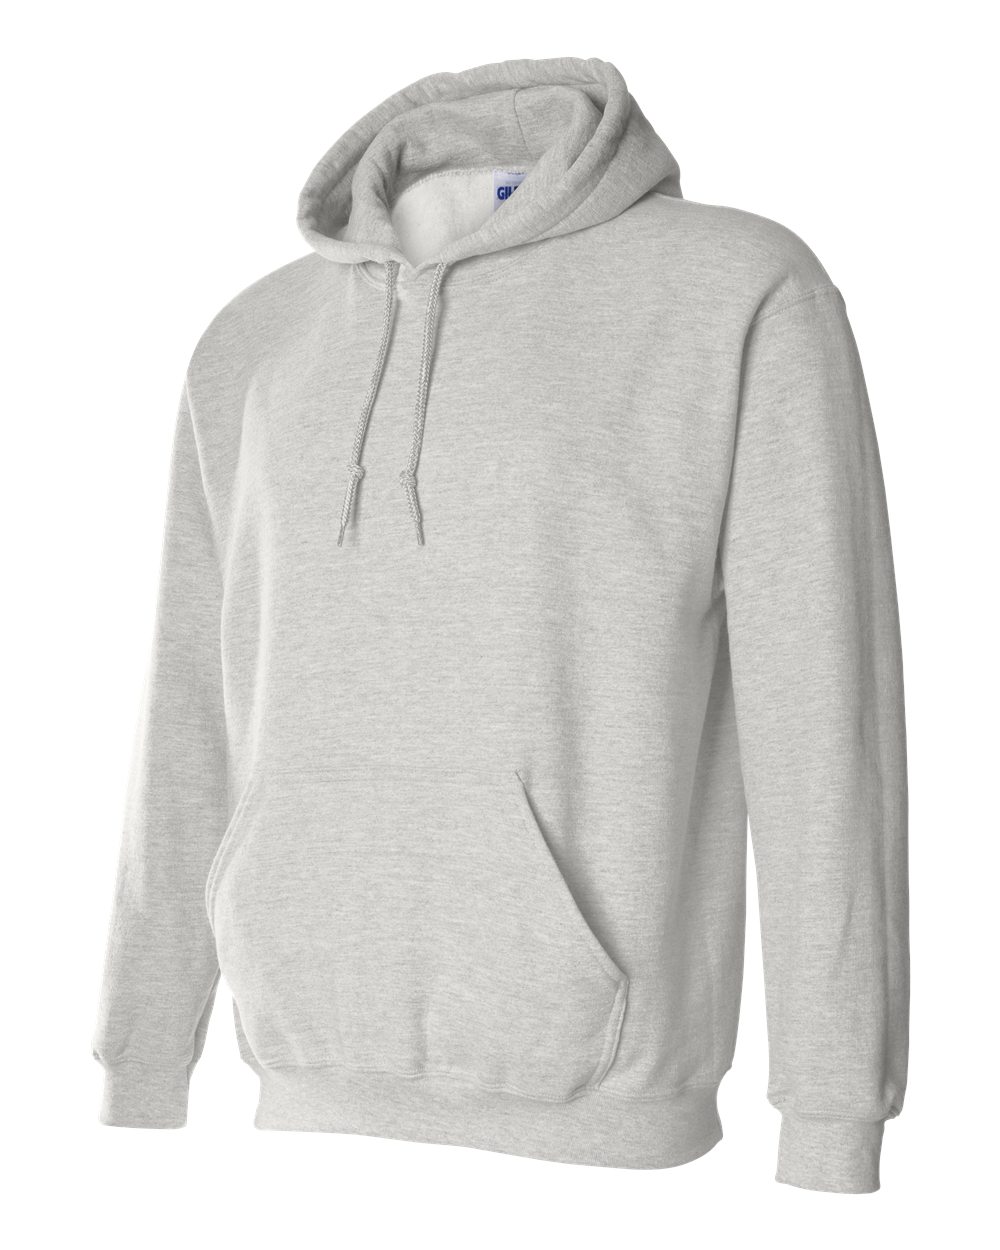 Gildan 18500 Heavy Blend Hooded Sweatshirt $12.64 - Men's Fleece